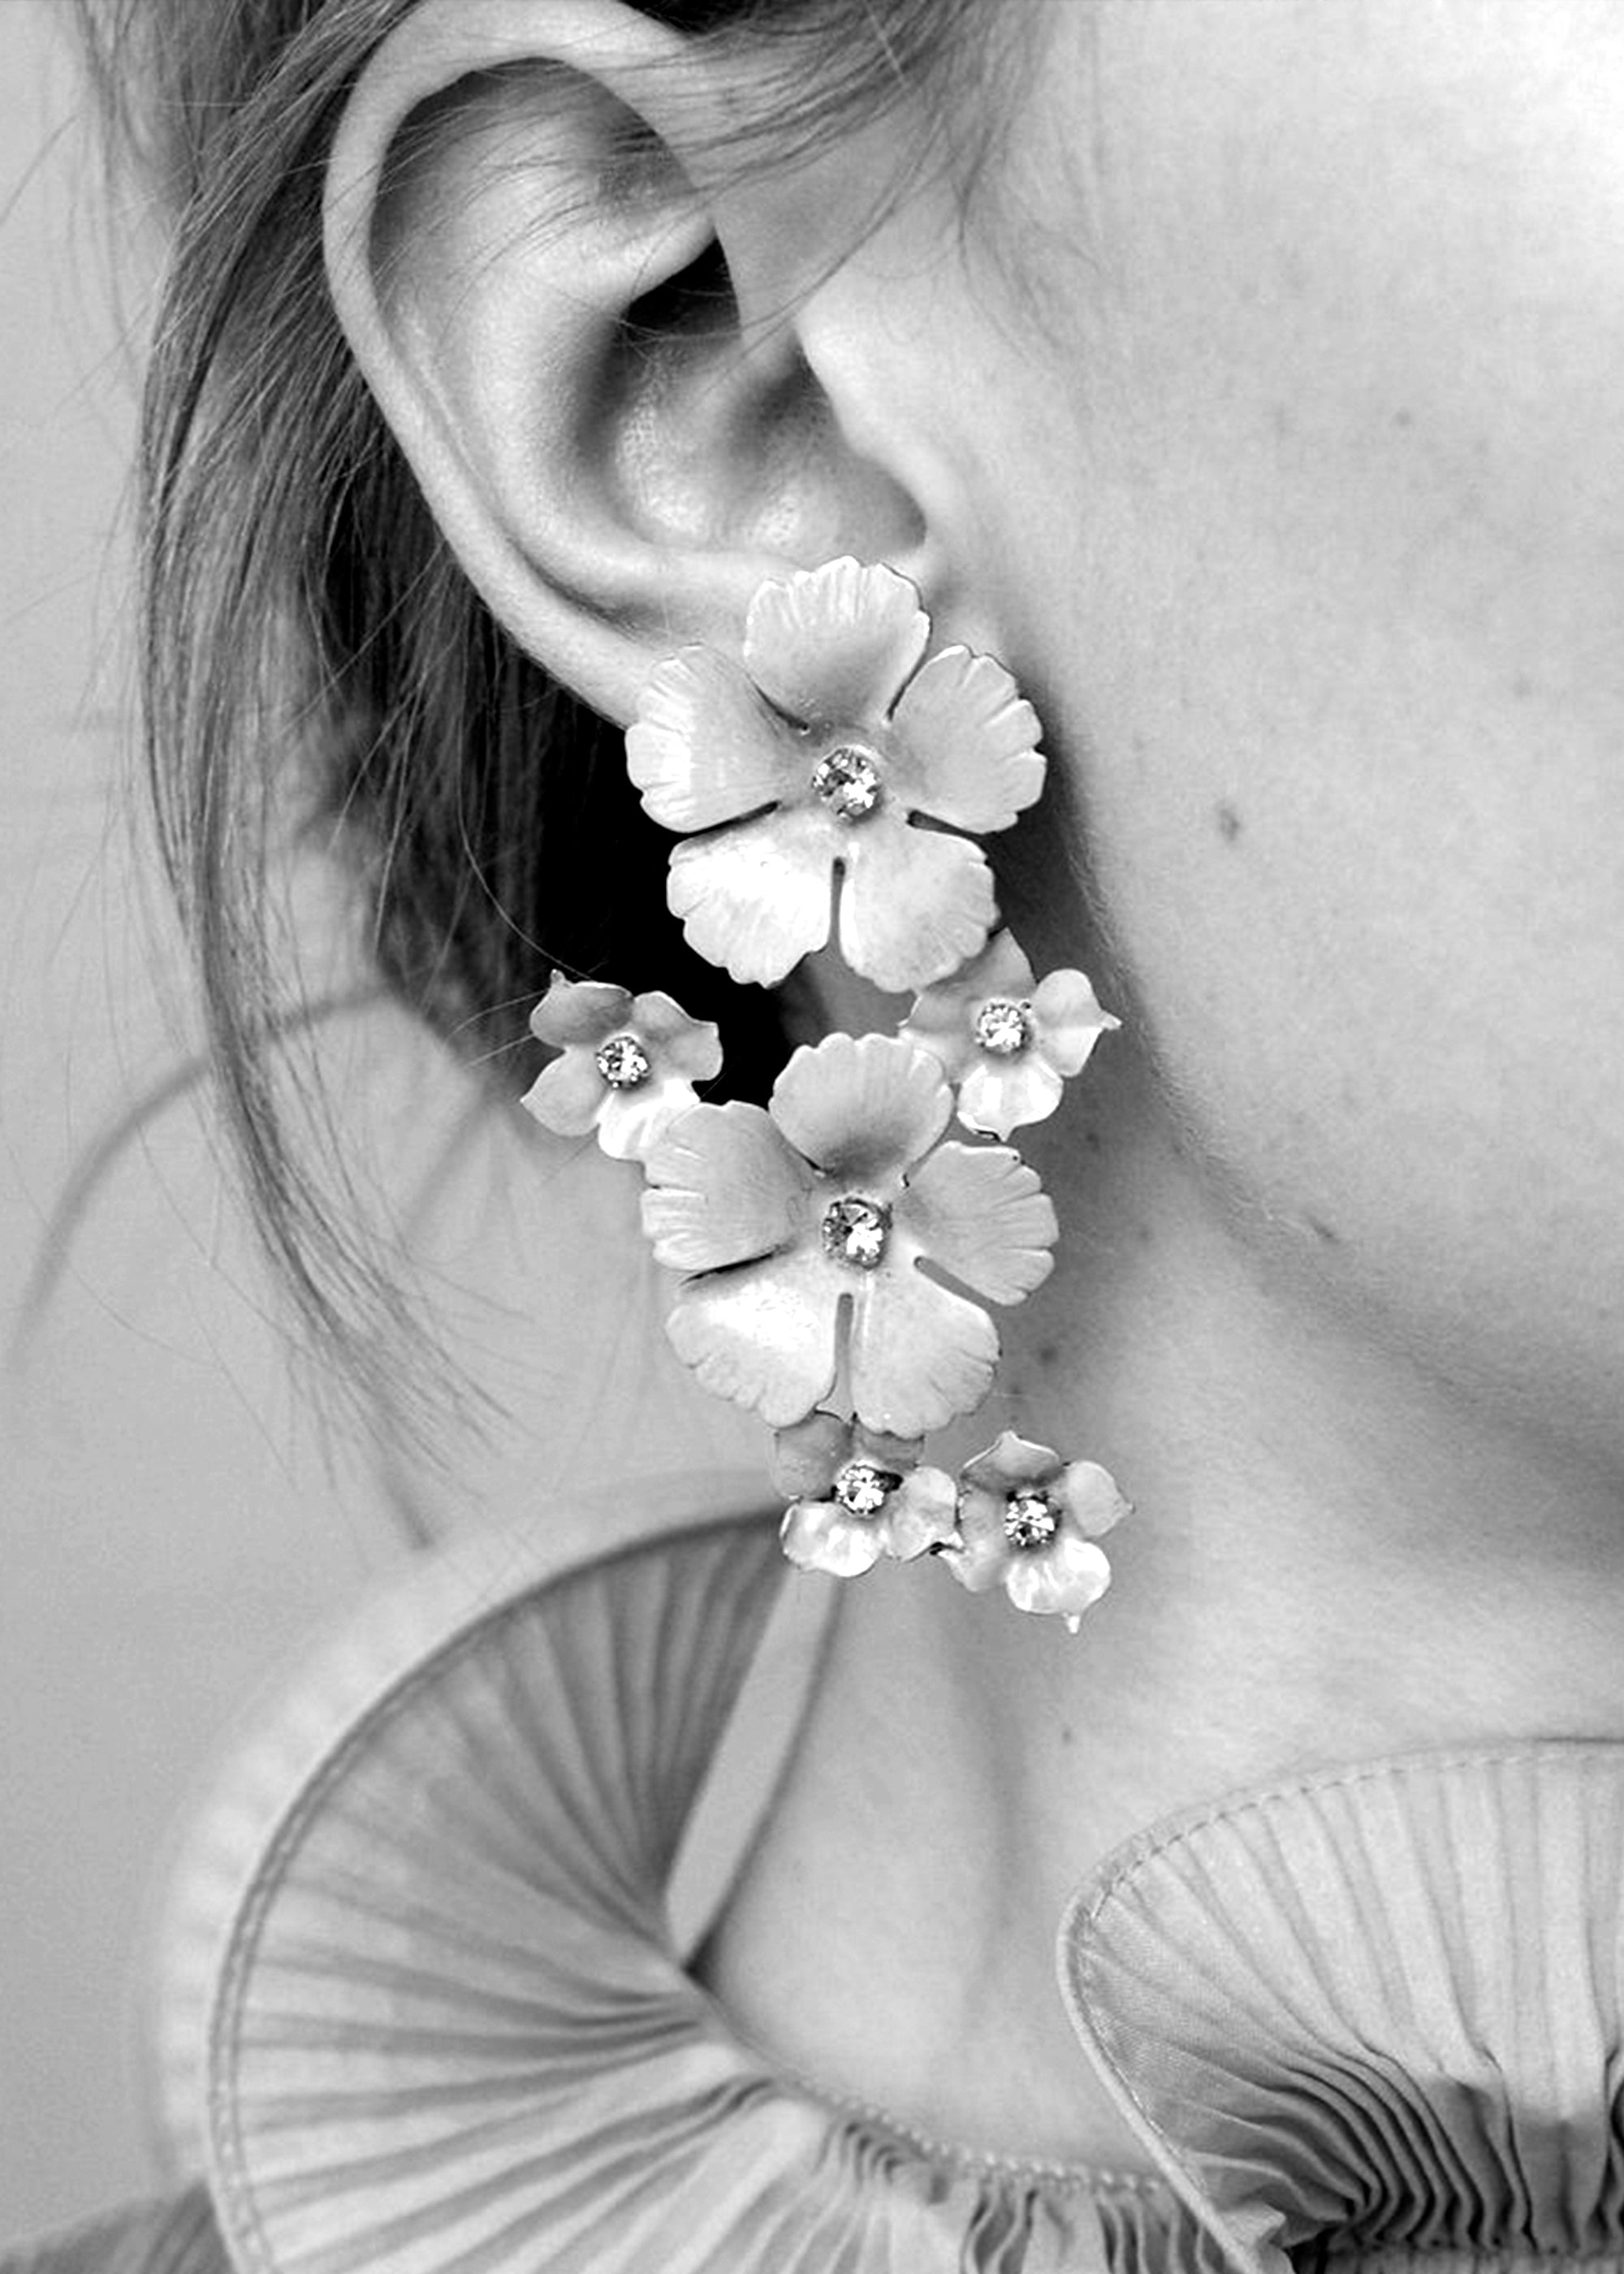 Oleander Earrings